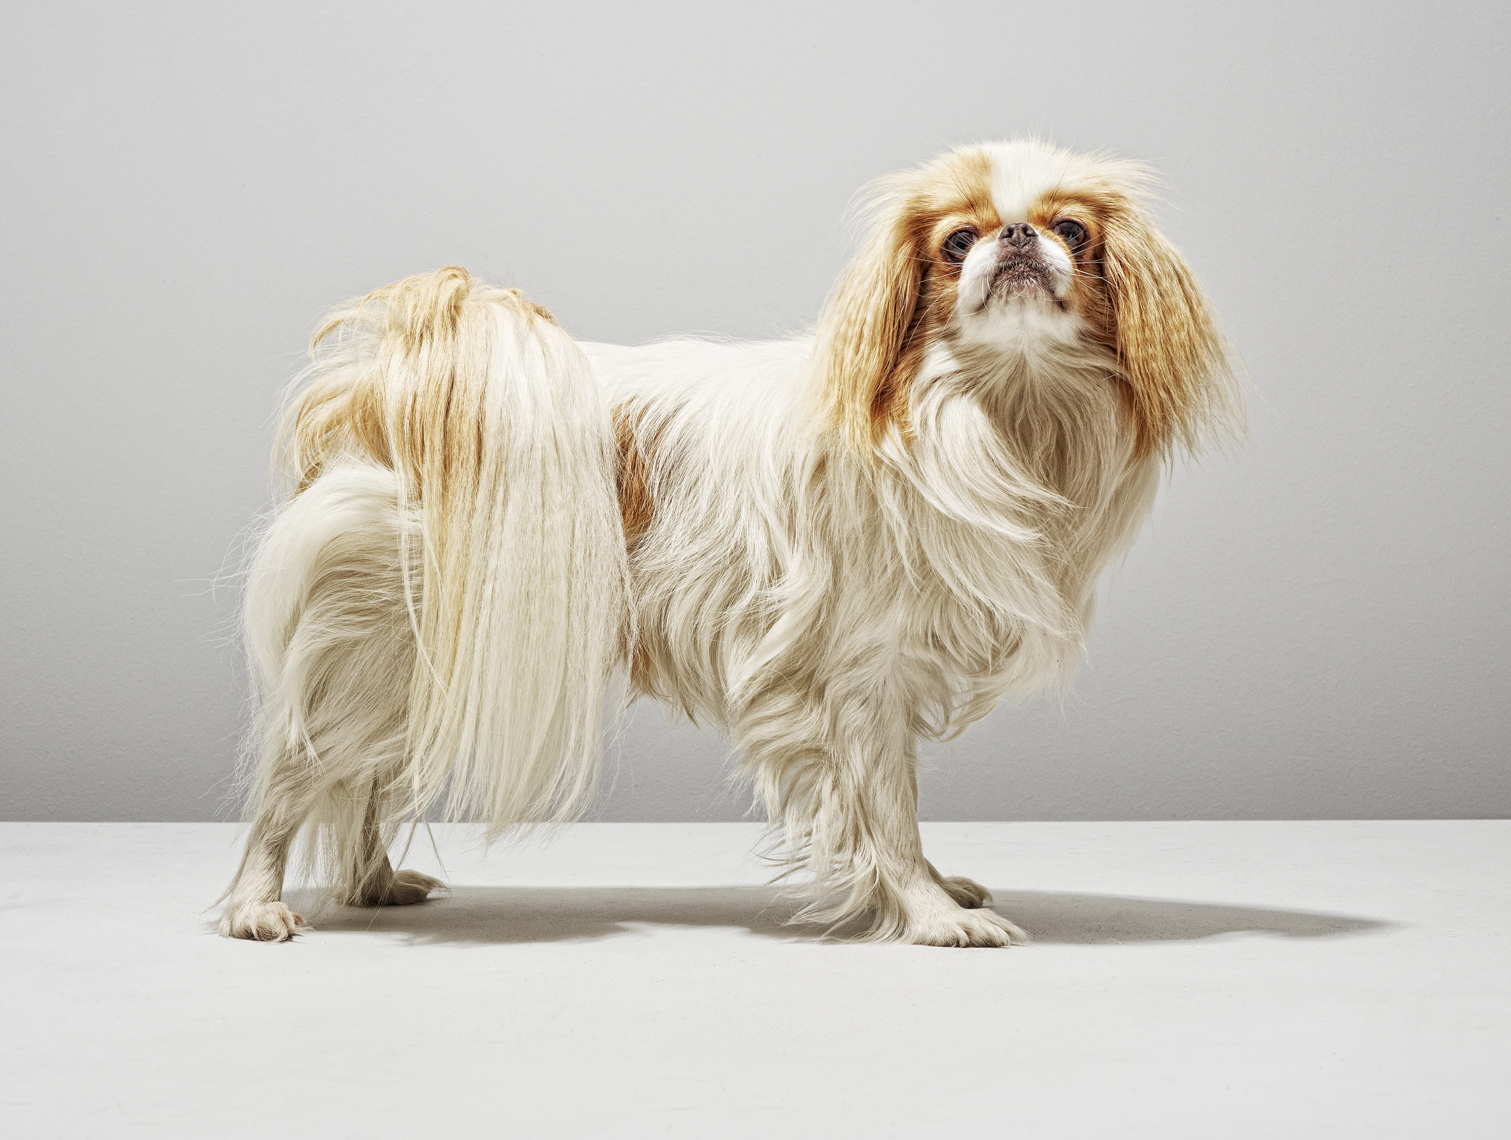 Alex Howe animals dog studio profile portrait with shadow